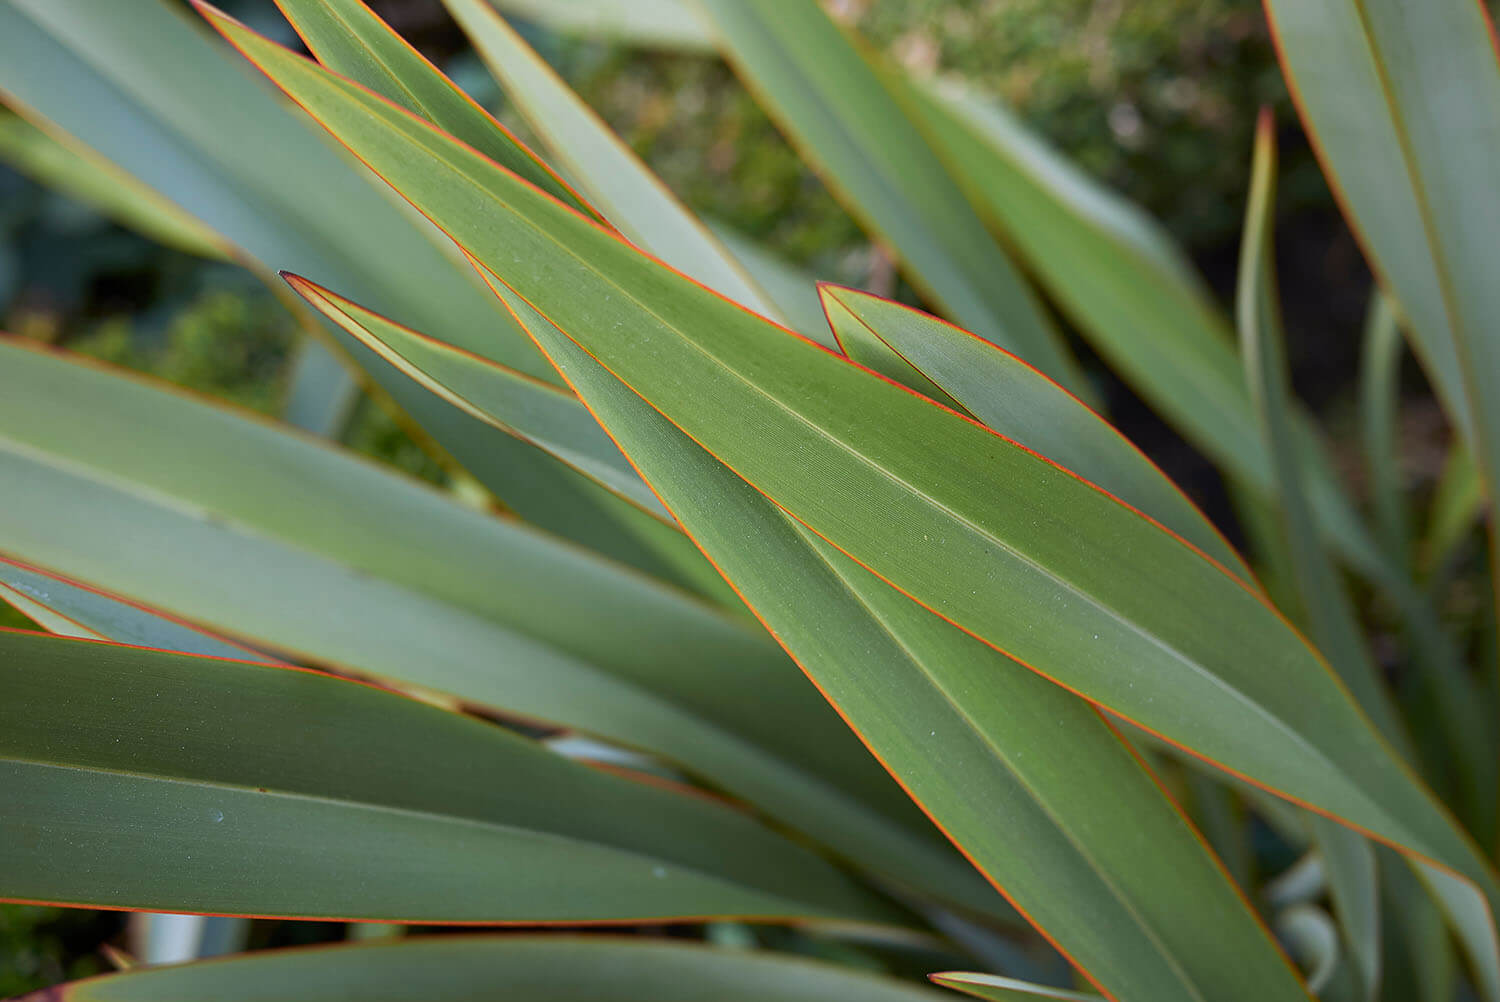 New Zealand flax (Harakeke) leaves